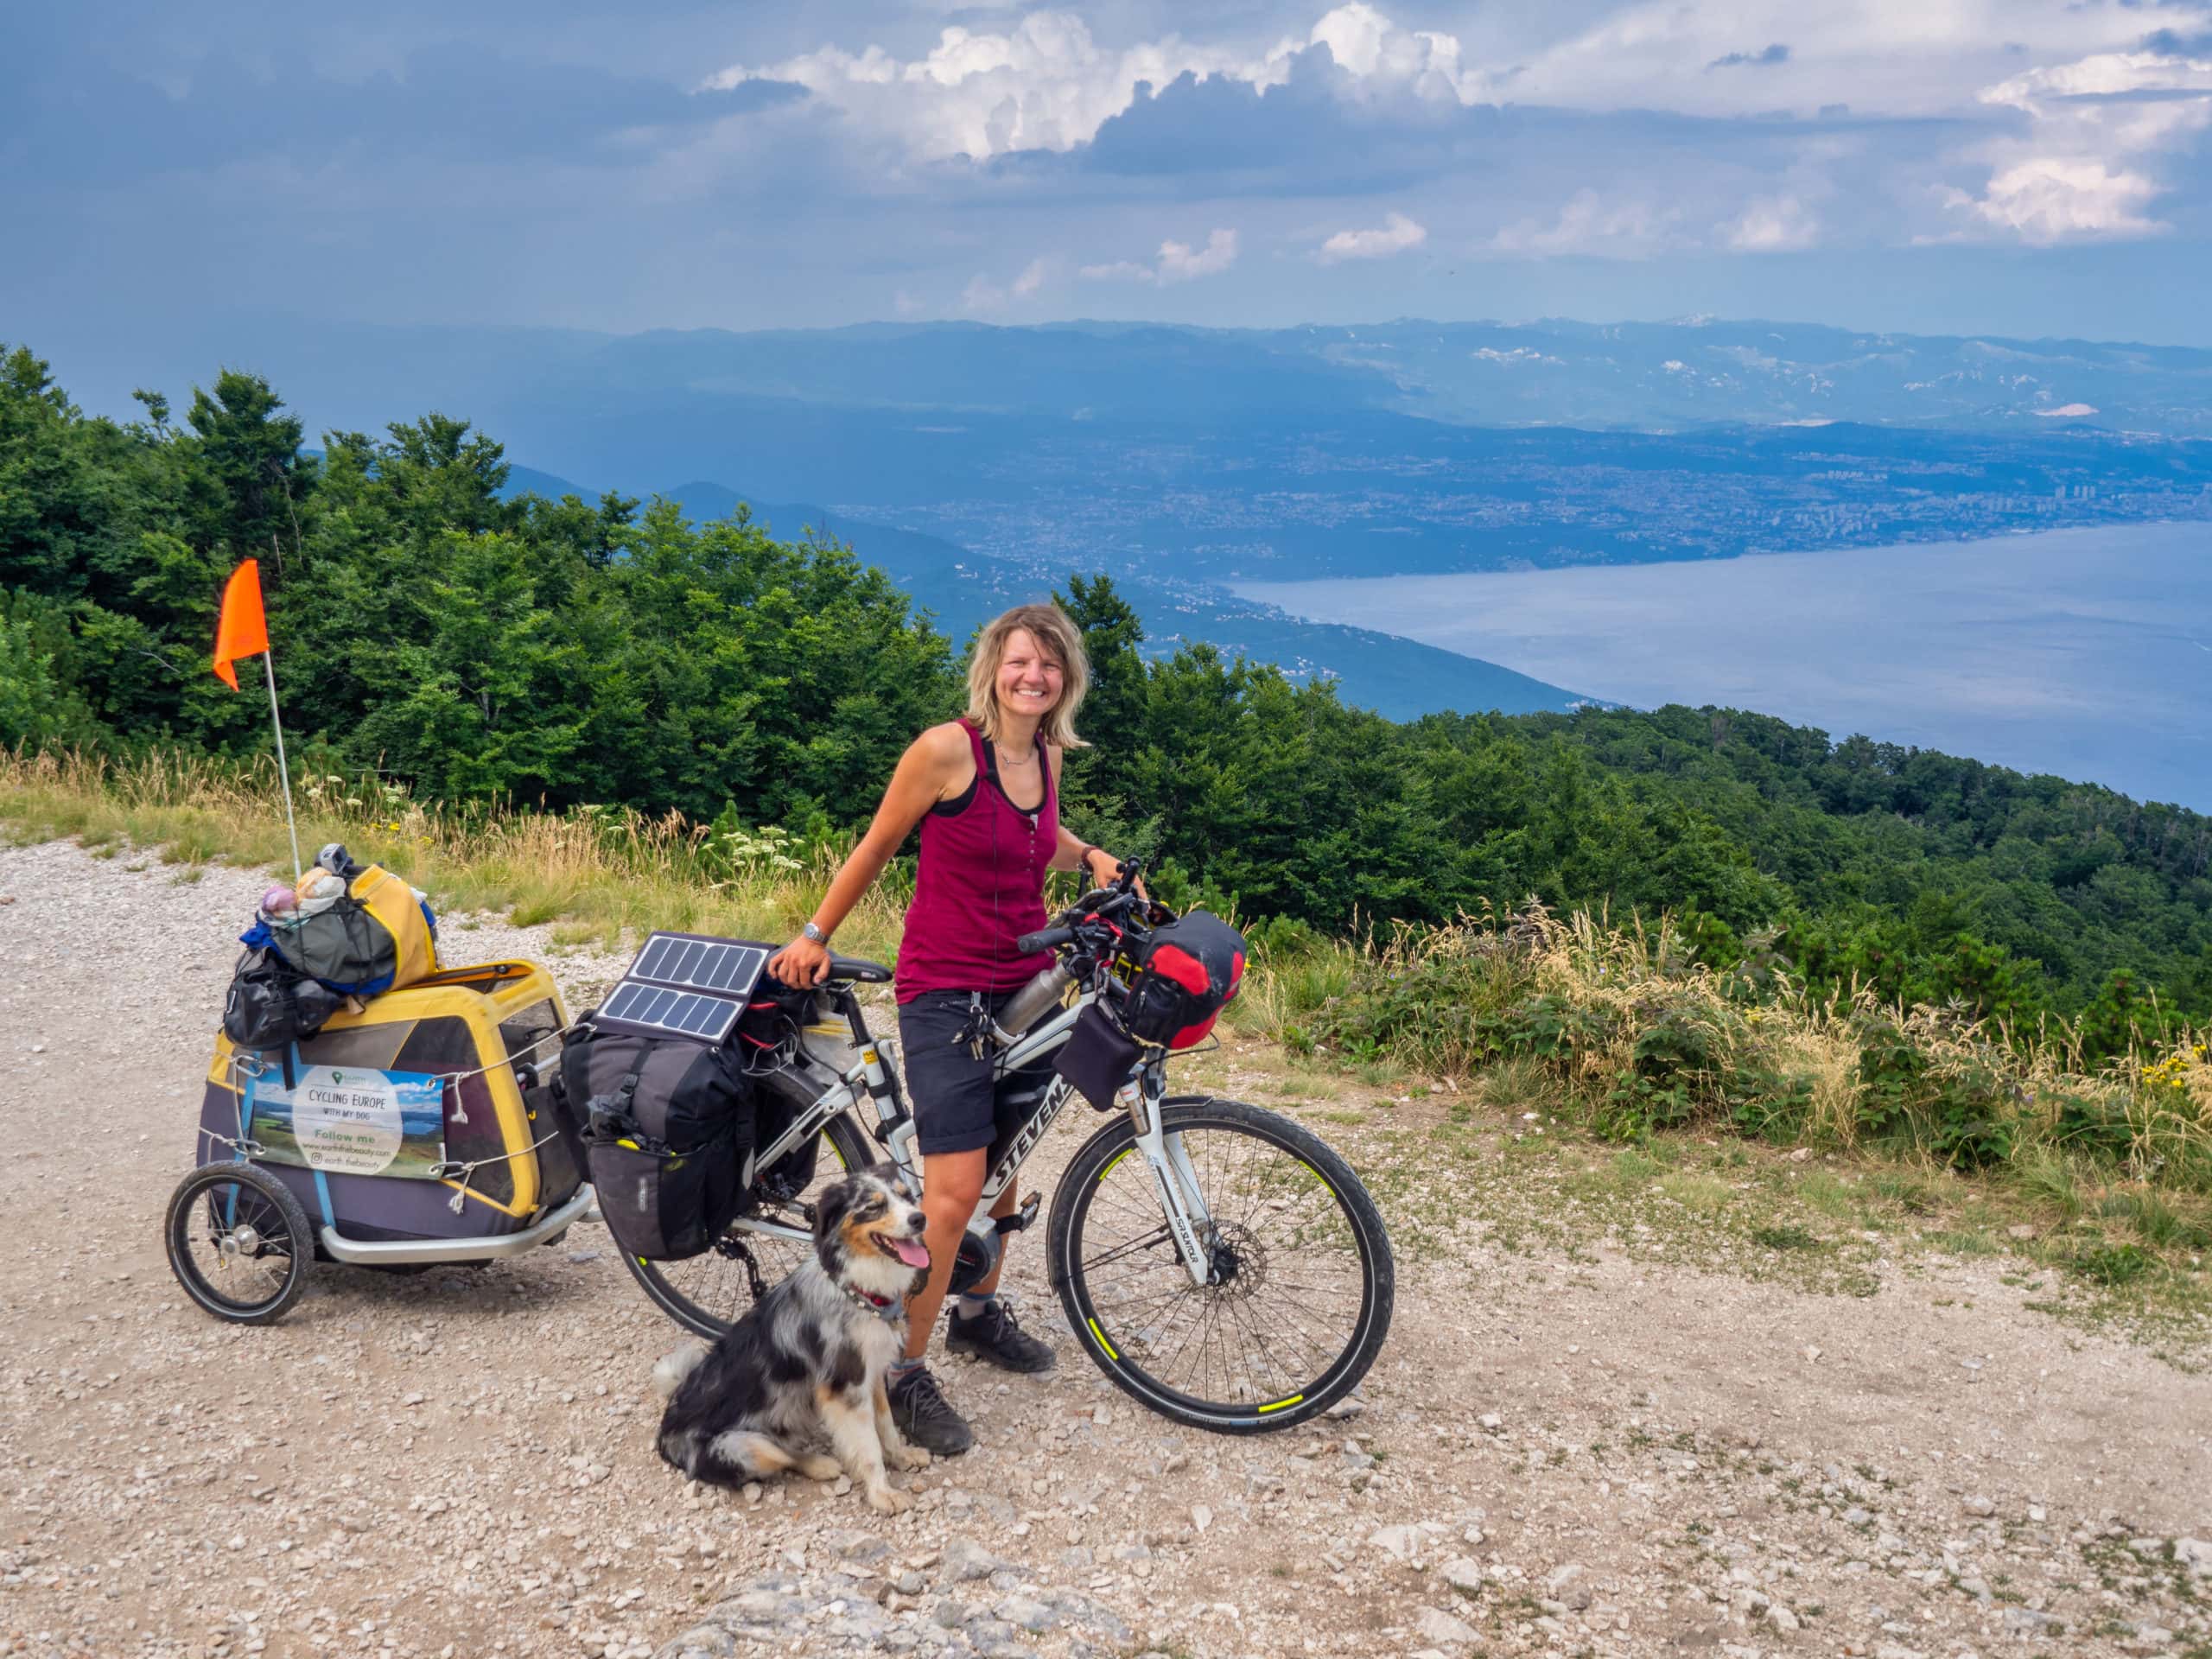 Packliste (sinnvoll/nicht sinnvoll) – Fahrradreise mit Hund (E-Bike) 6 Monate durch Europa